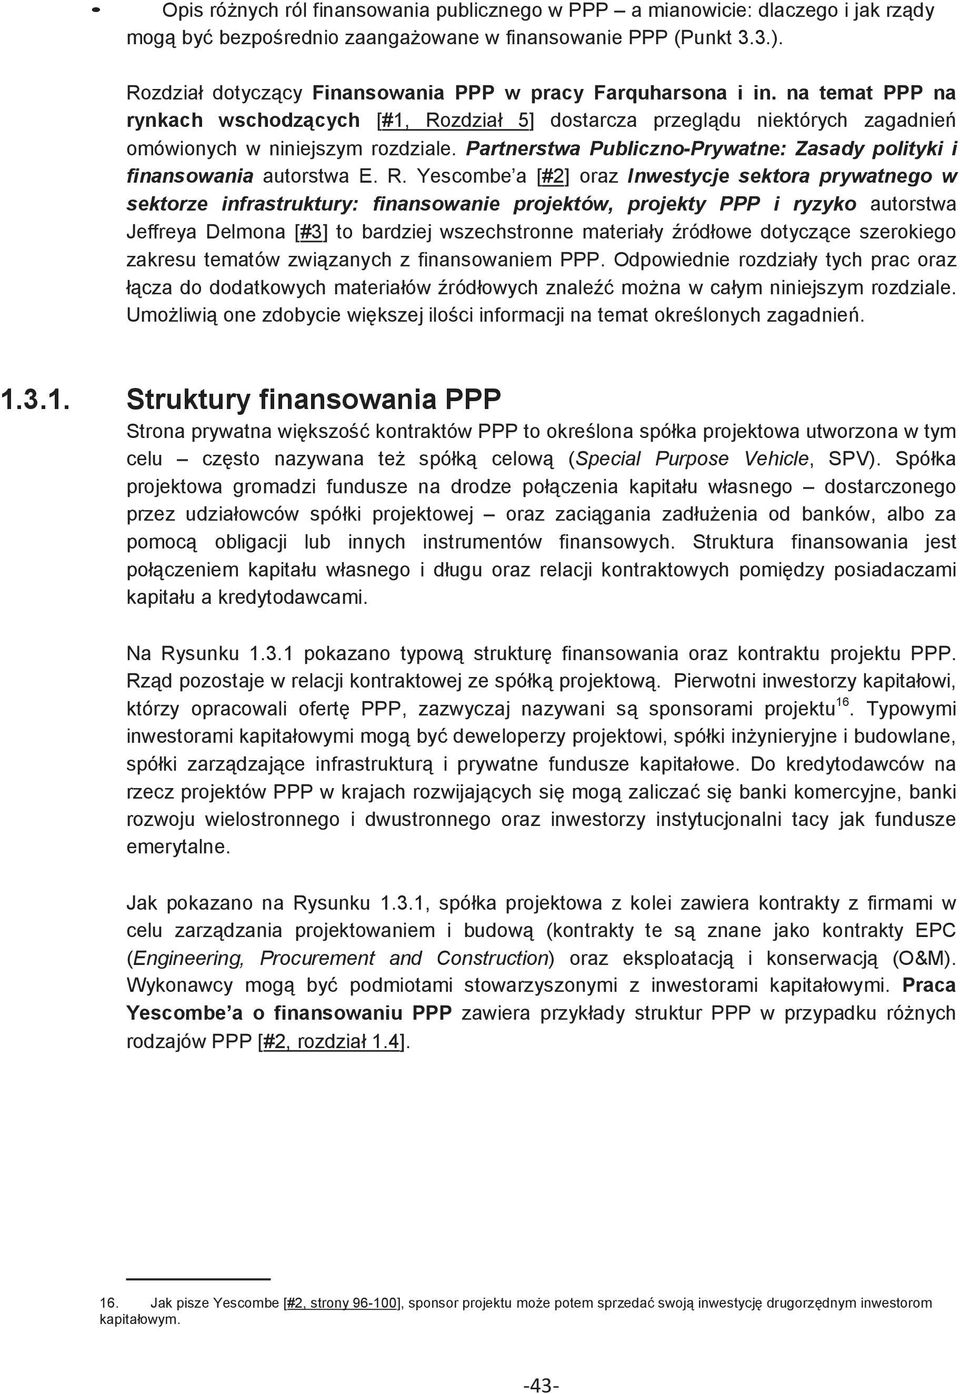 Partnerstwa Publiczno-Prywatne: Zasady polityki i finansowania autorstwa E. R.